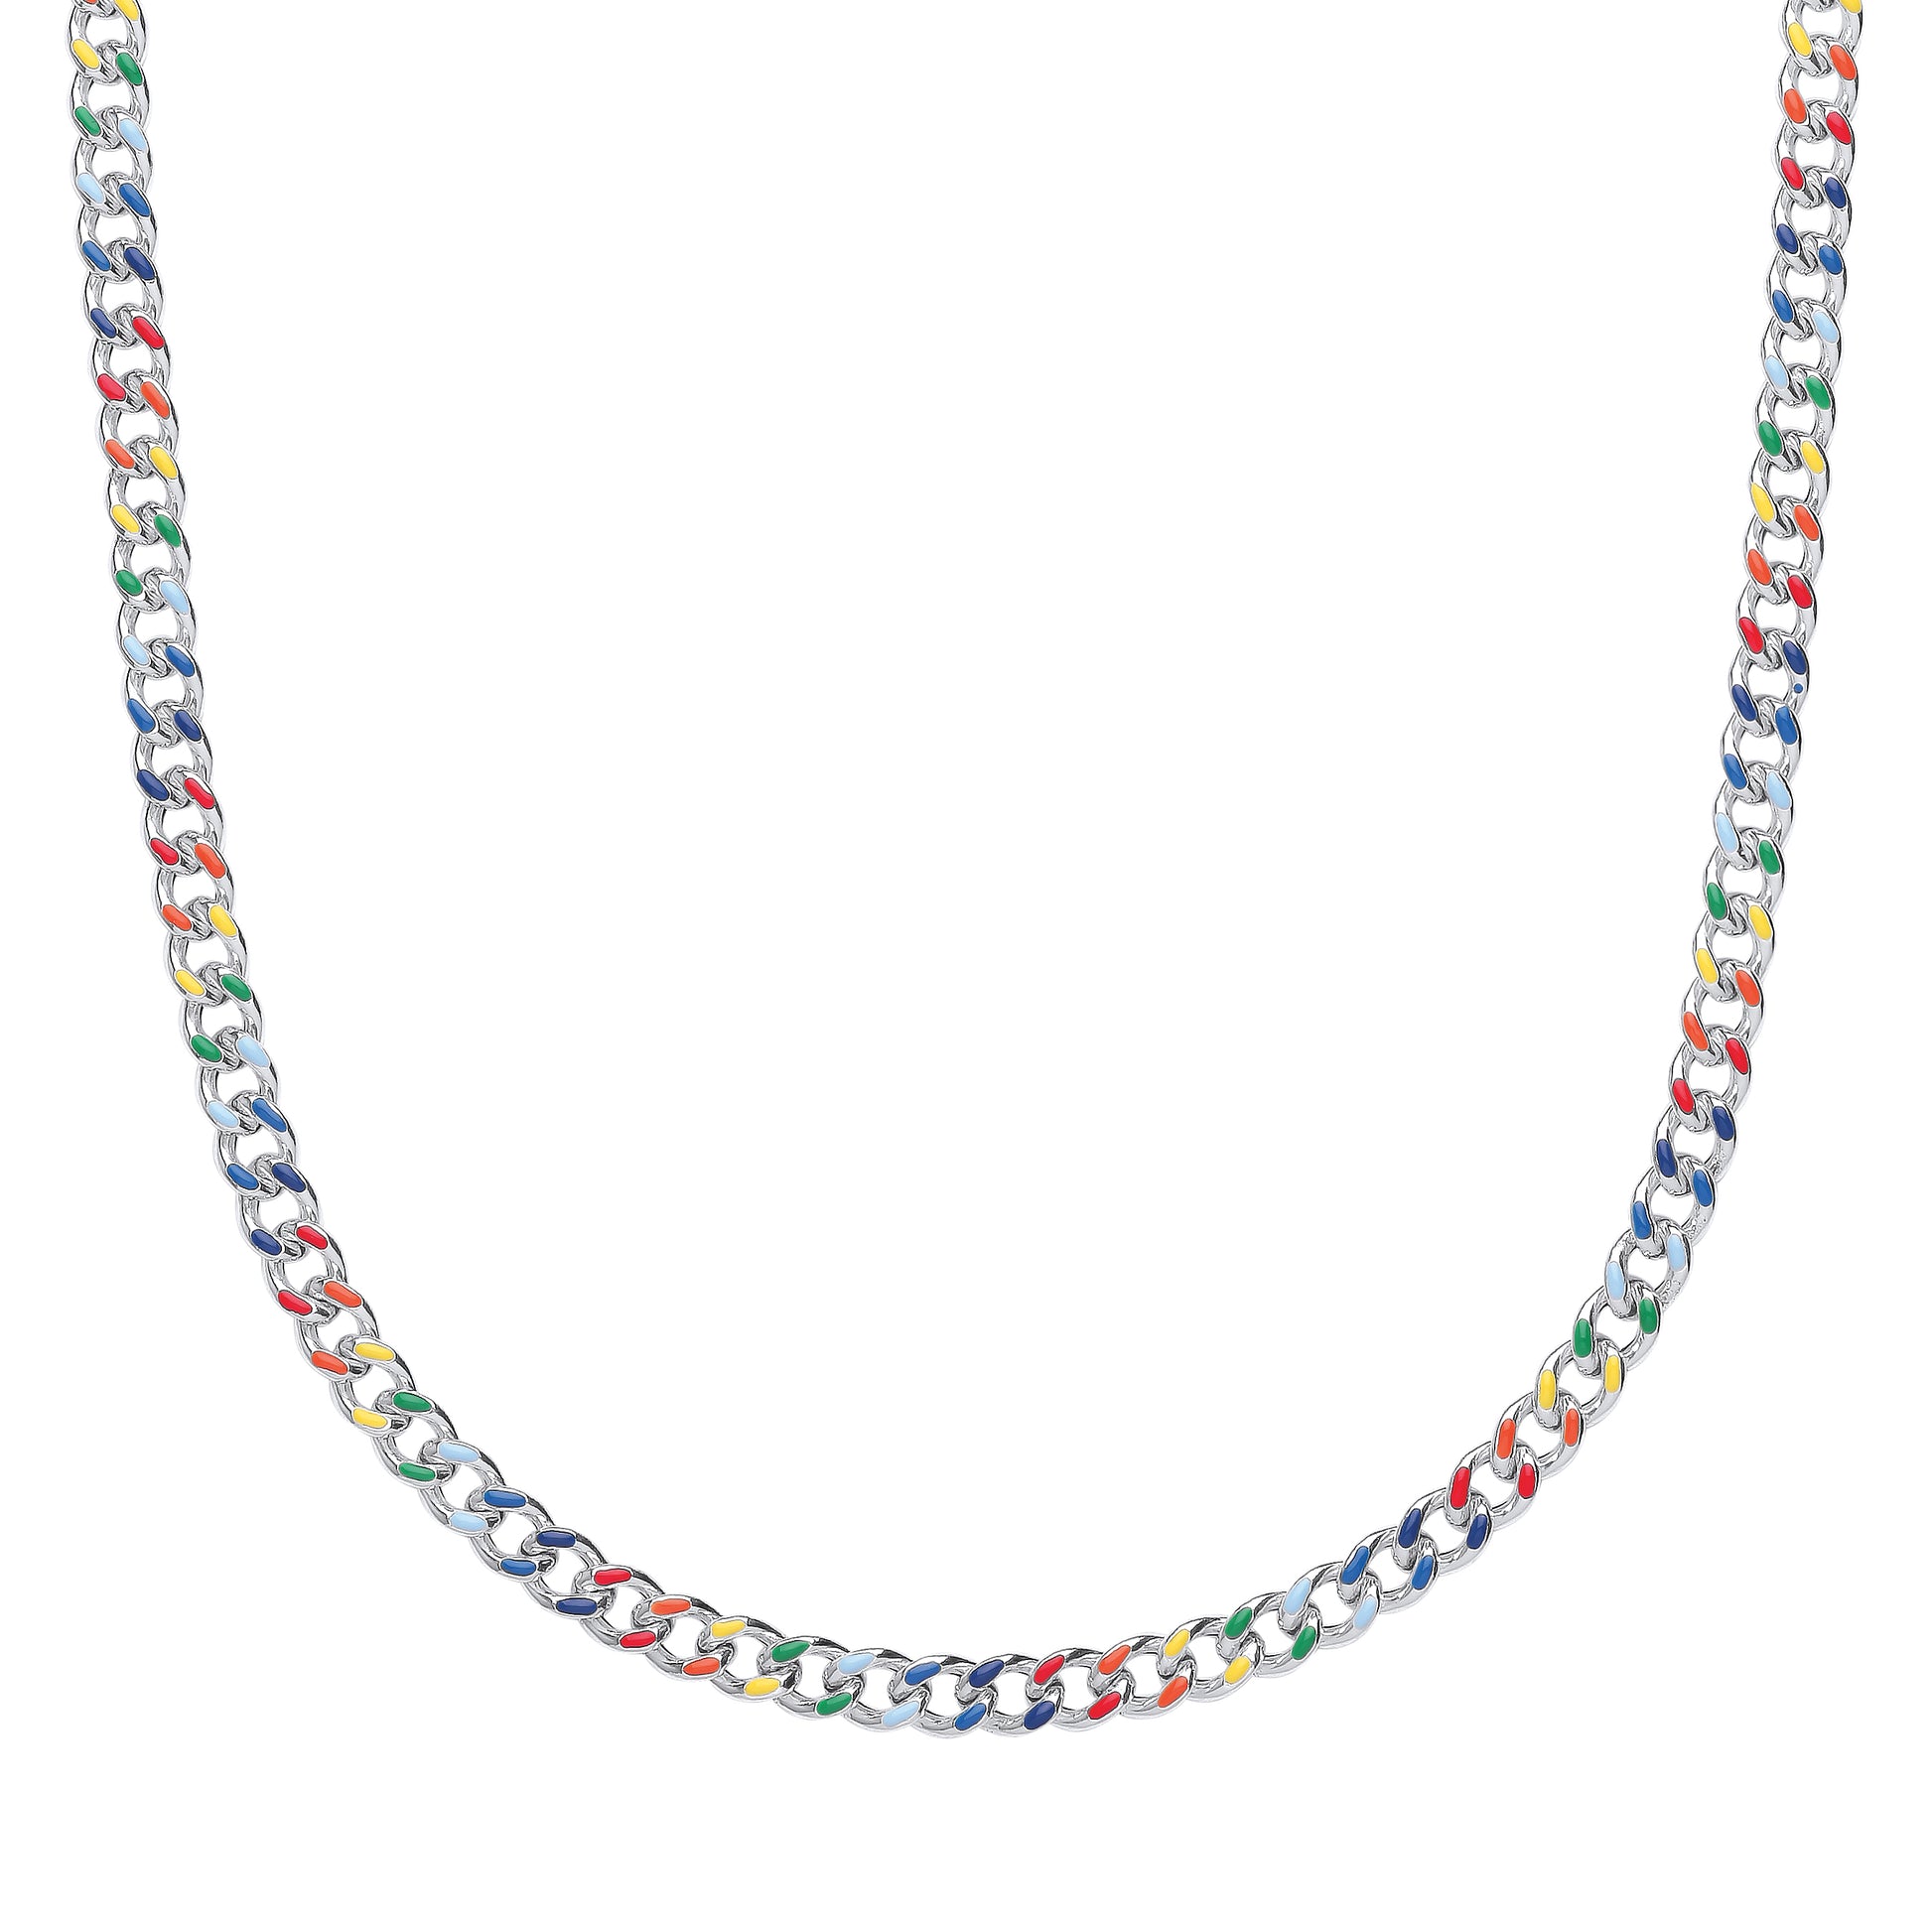 Unisex Silver  Rainbow Enamel Curb Chain Necklace 18 inch 45cm - GVK422